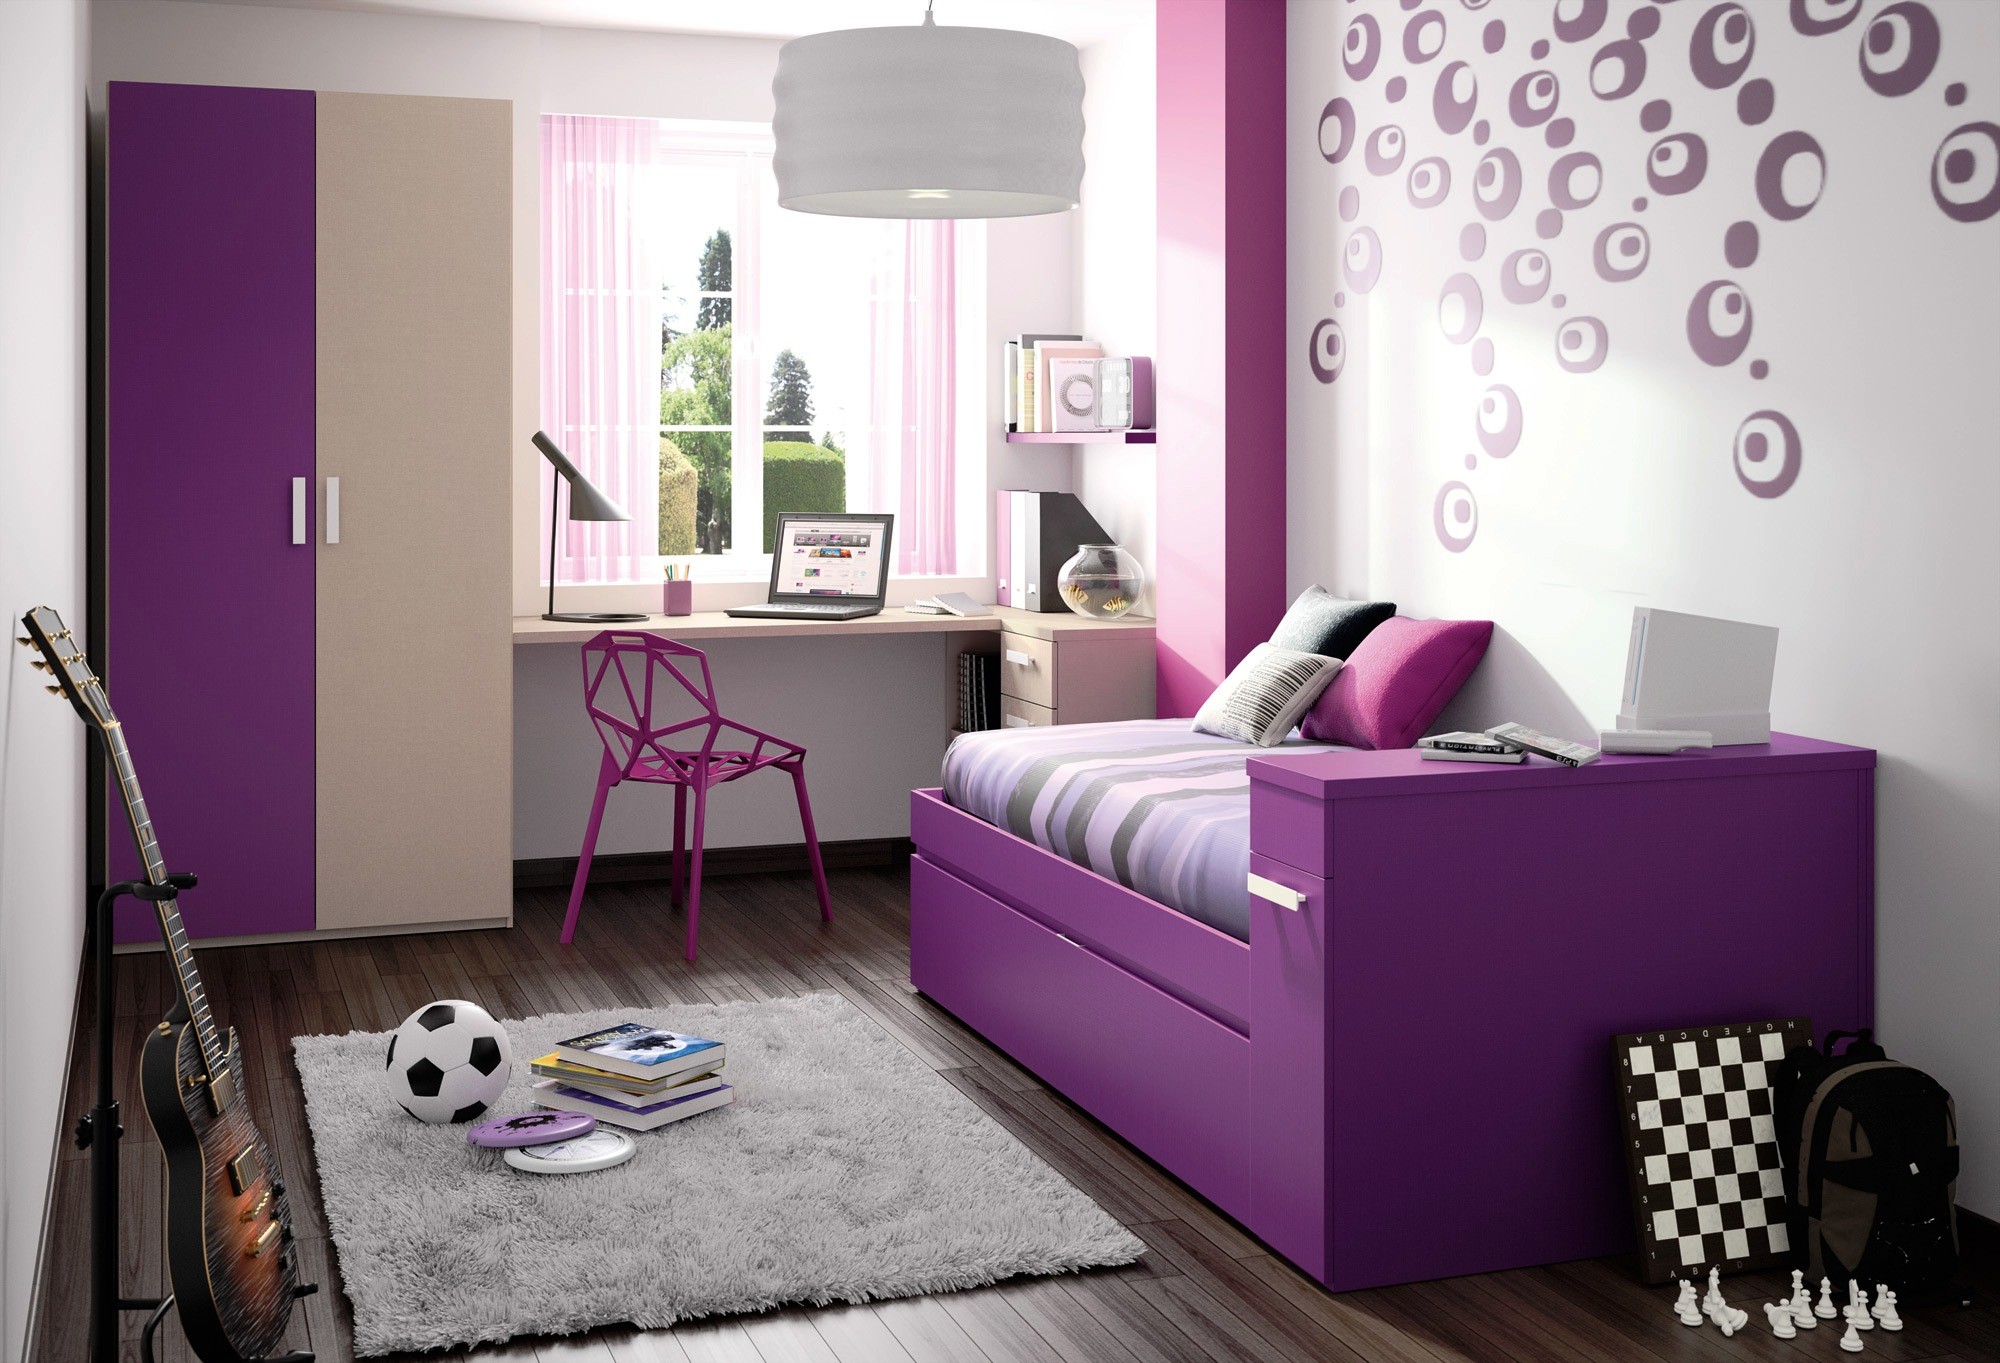 2000x1363 ... Bedroom Cool Teenage Rooms Ideas Hd Wallpaper Room Ideas for and  Bedroom Cool Teenage Rooms Bedroom ...